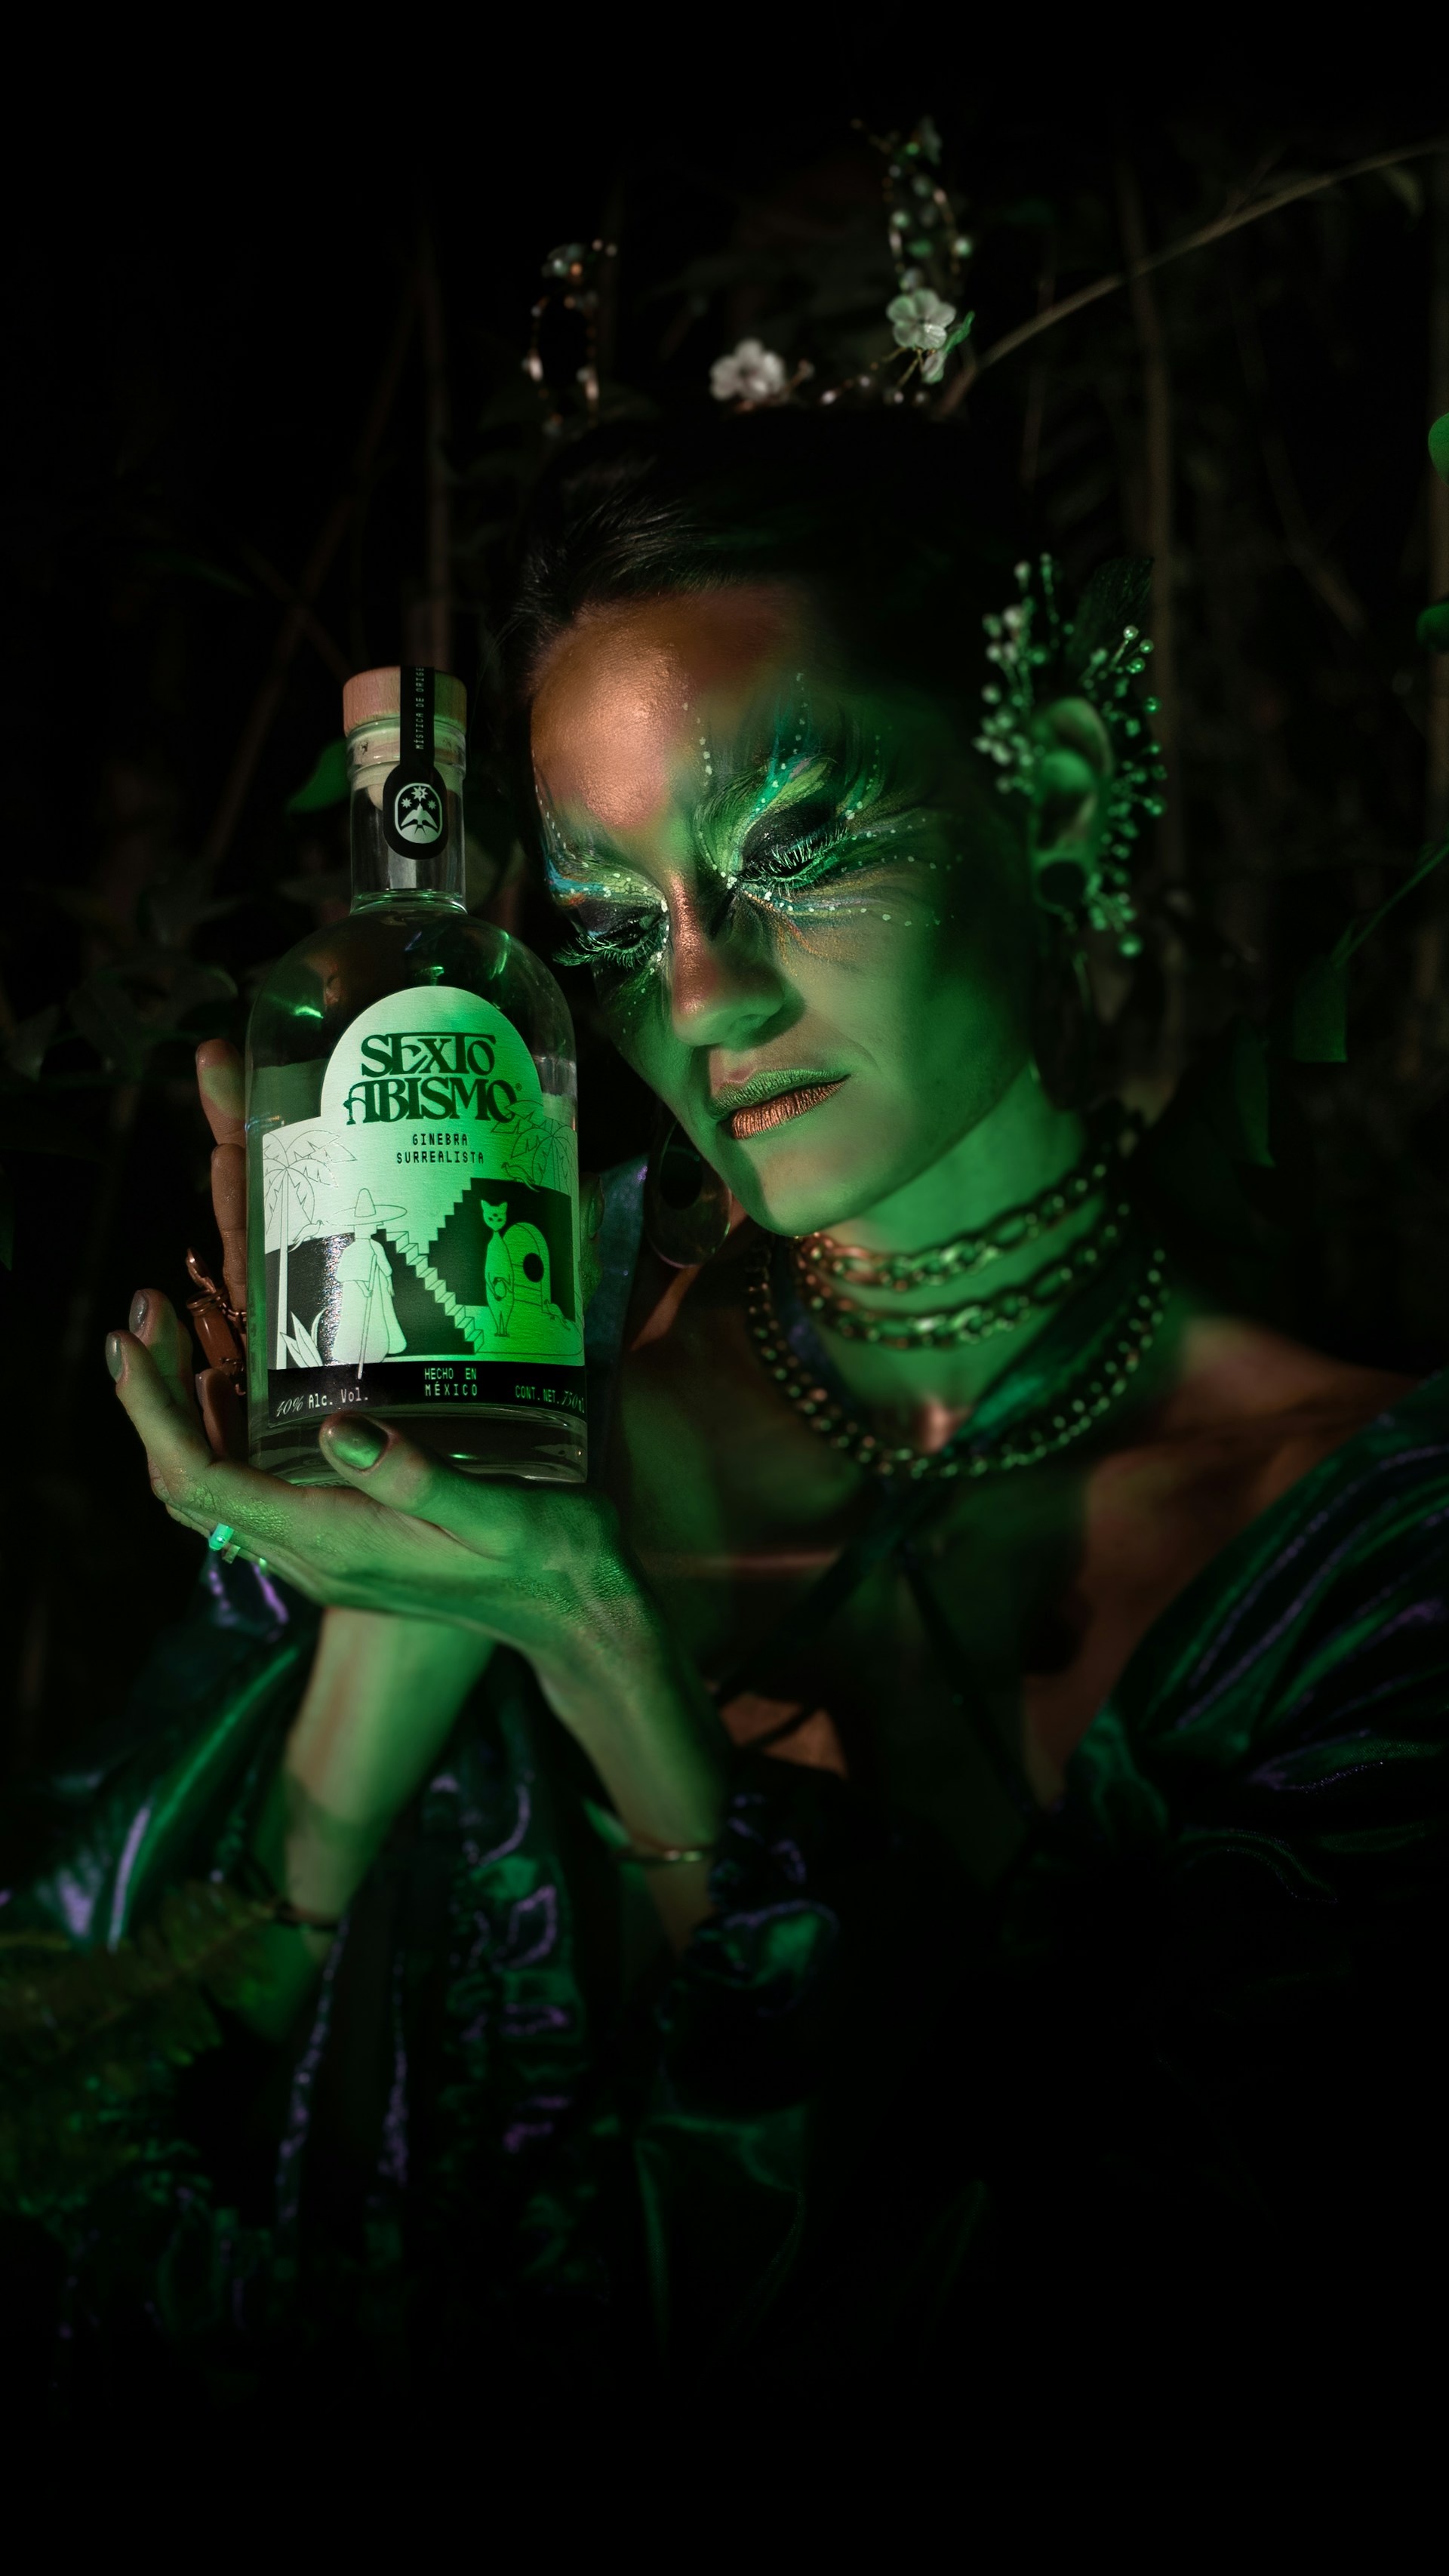 Femme étrange, quasi mystique, nimbée de vert sur fond noir, tiens une bouteille.